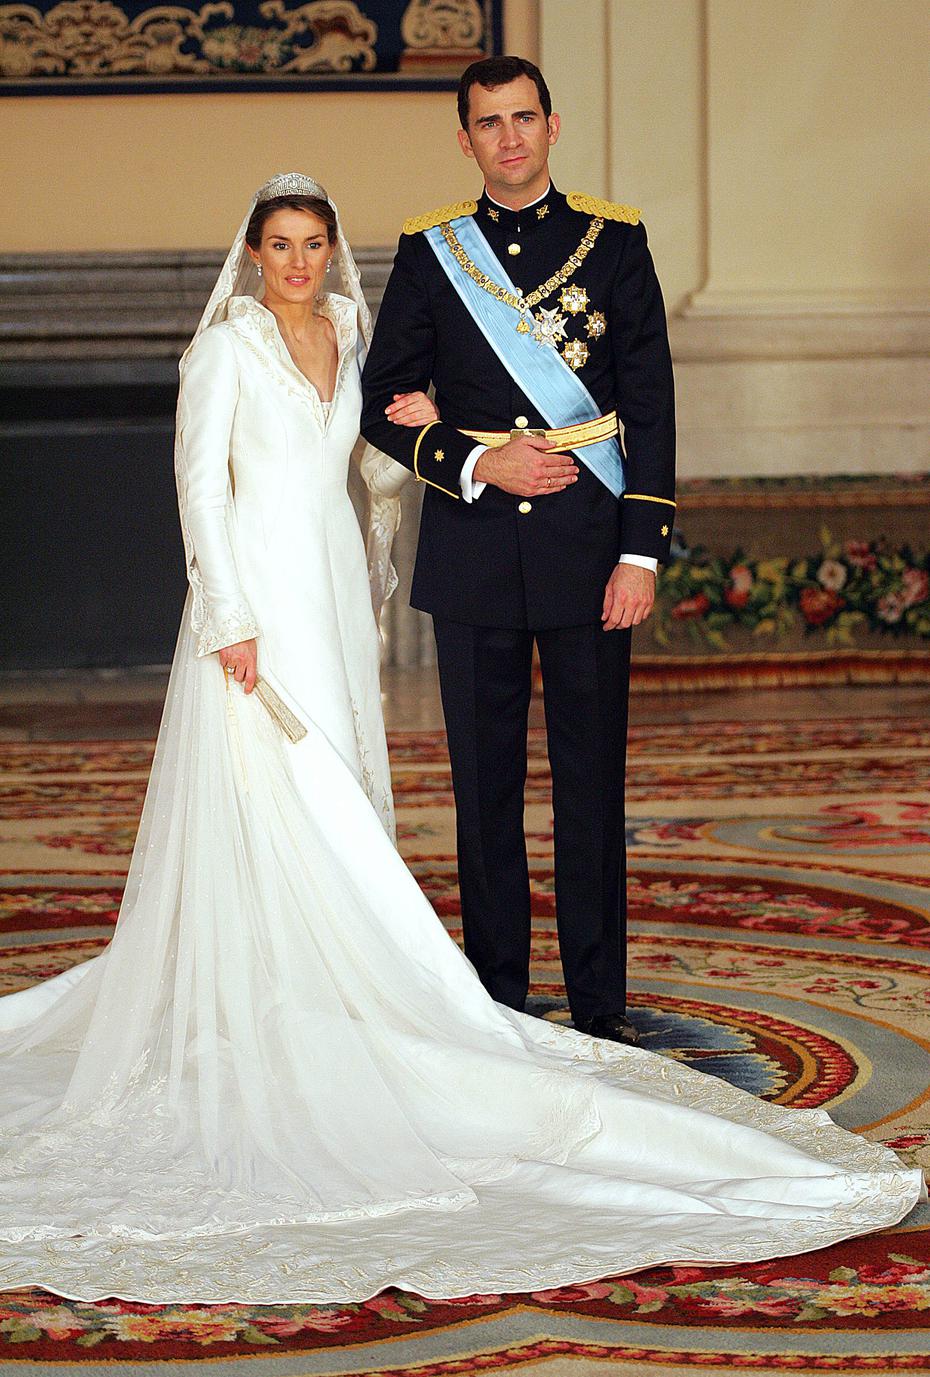 Una foto de la boda de Felipe y Letizia en el 2004, se dice que Corinna Larsen organizó el viaje de luna de miel de la pareja. (Archivo)